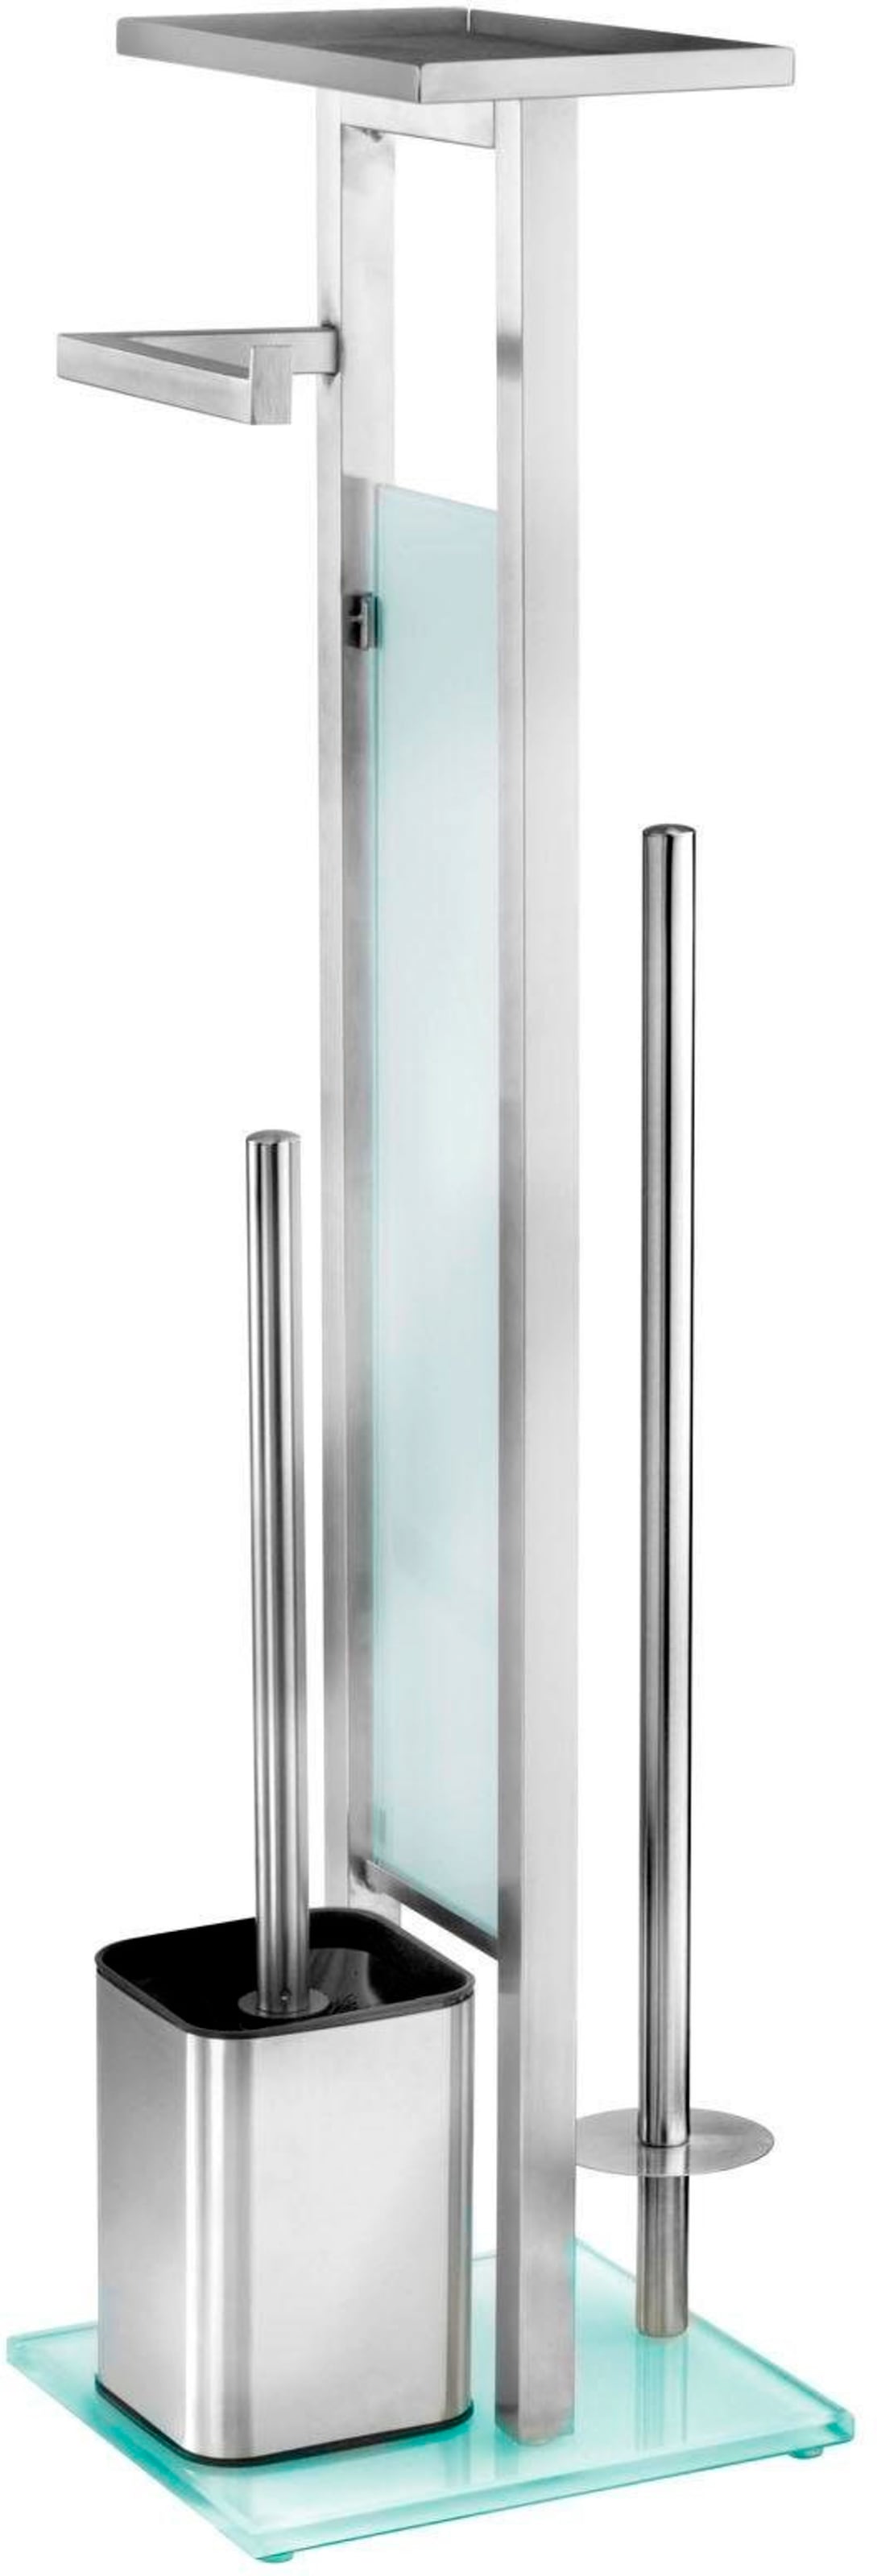 WC-Garnitur »Debar«, aus Edelstahl-Glas, Stand WC-Garnitur